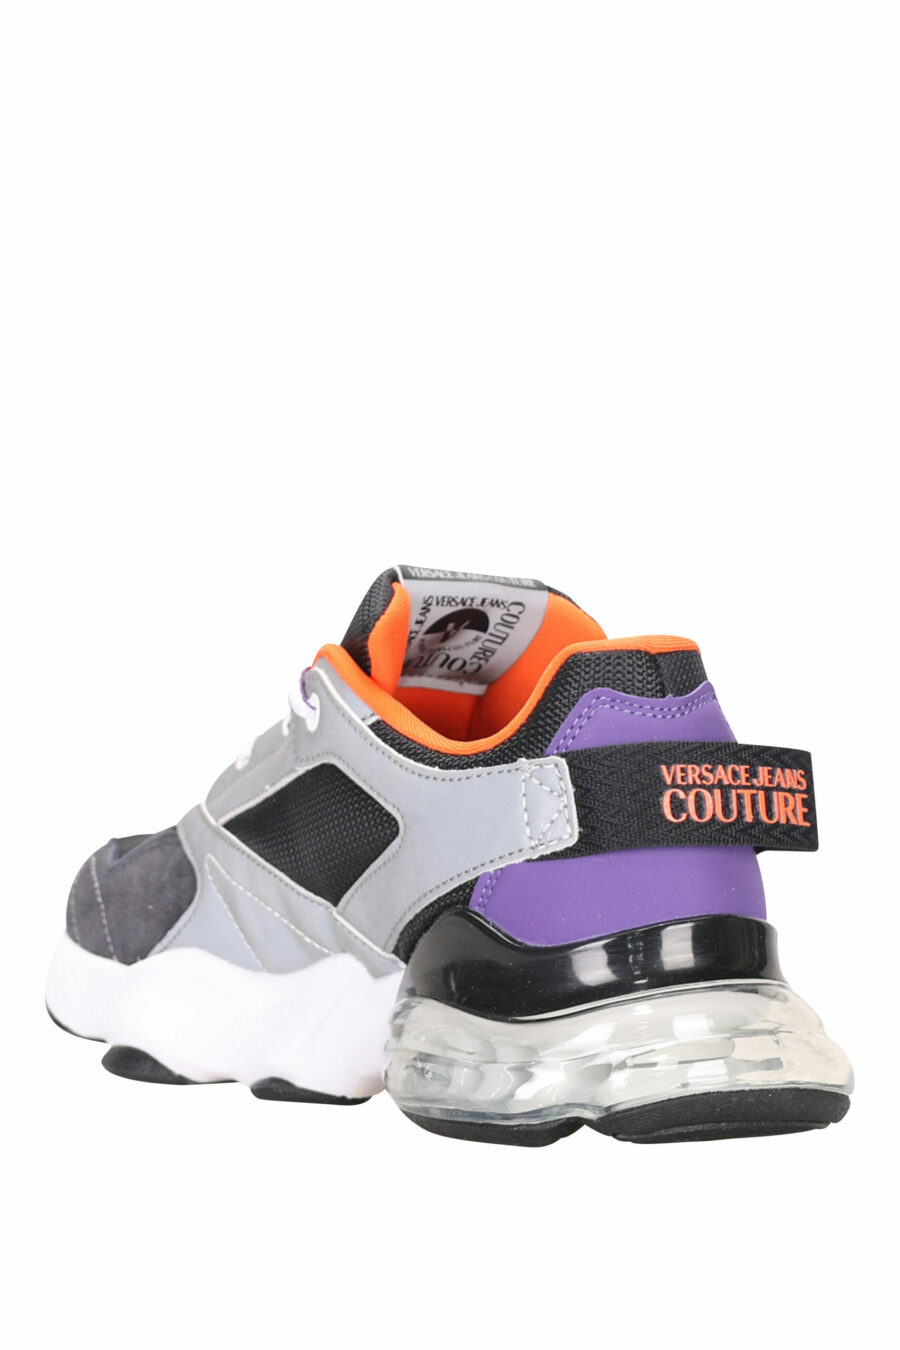 Schwarze Mix-Schuhe mit Schlauch und weißem Mini-Logo - 8052019485165 4 skaliert